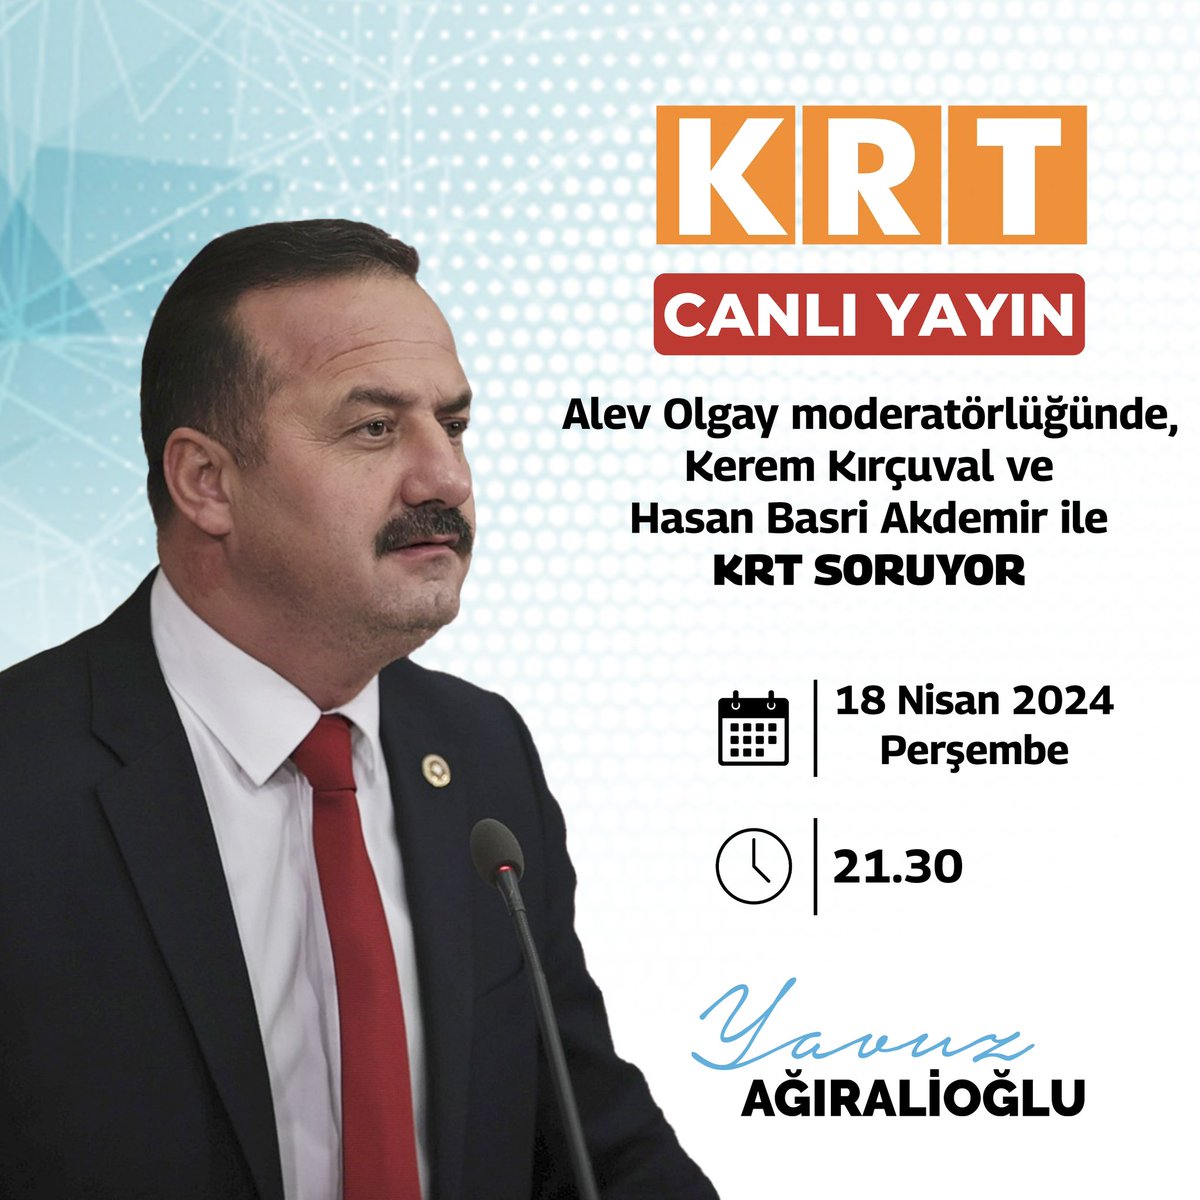 🗓️ 18 Nisan Perşembe (bu akşam) ⏰ 21.30’da, 📺 KRT TV'de, Alev Olgay moderatörlüğünde, Kerem Kırçuval ve Hasan Basri Akdemir ile #KRTSORUYOR programındayız...